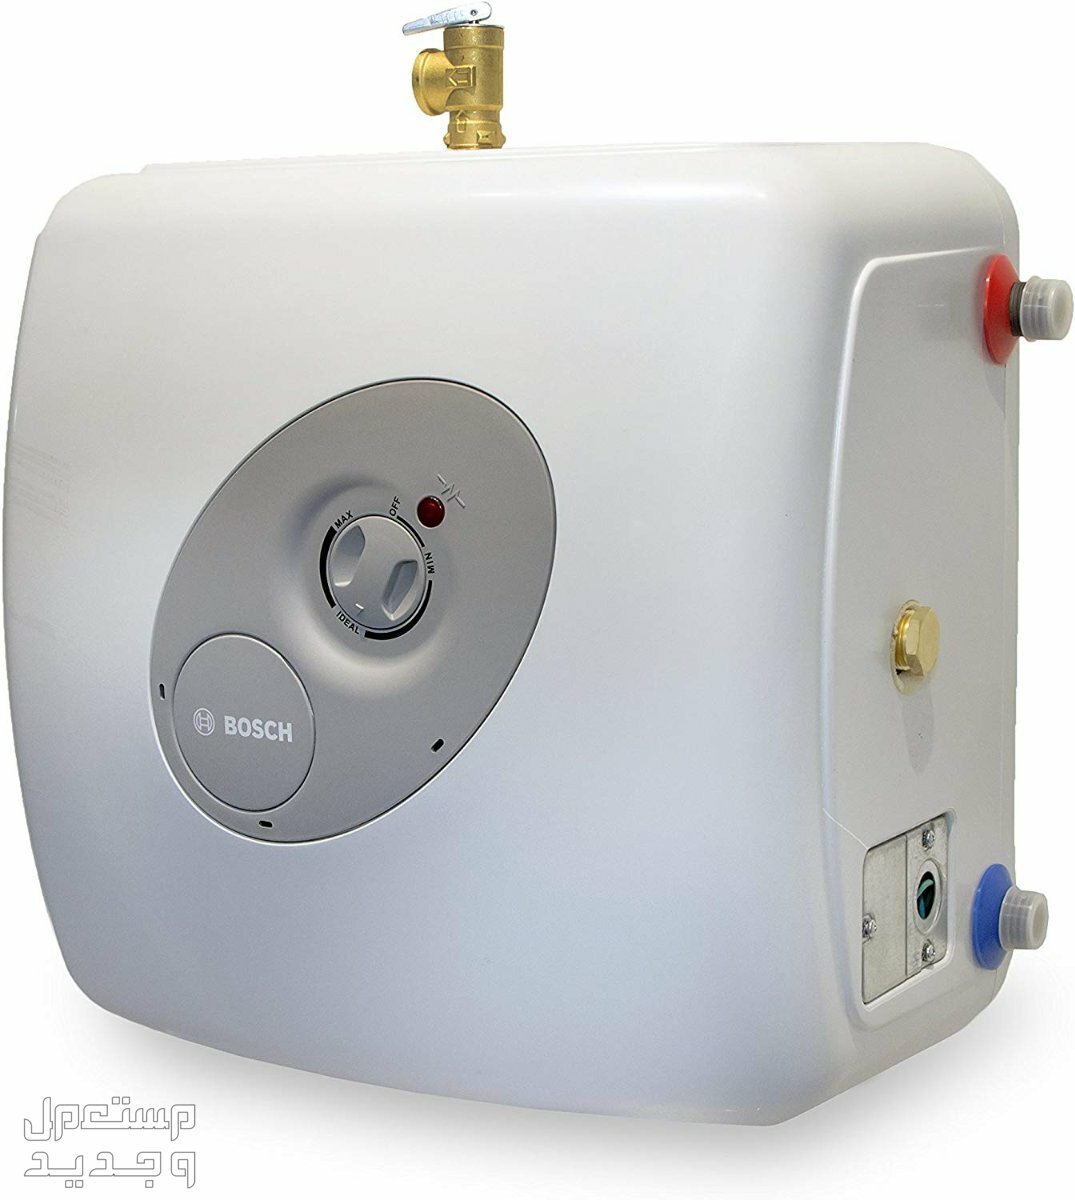 تعرف على أكثر 15 جهاز استهلاكاً للكهرباء في عمان سخان الماء الكهربائي Heater